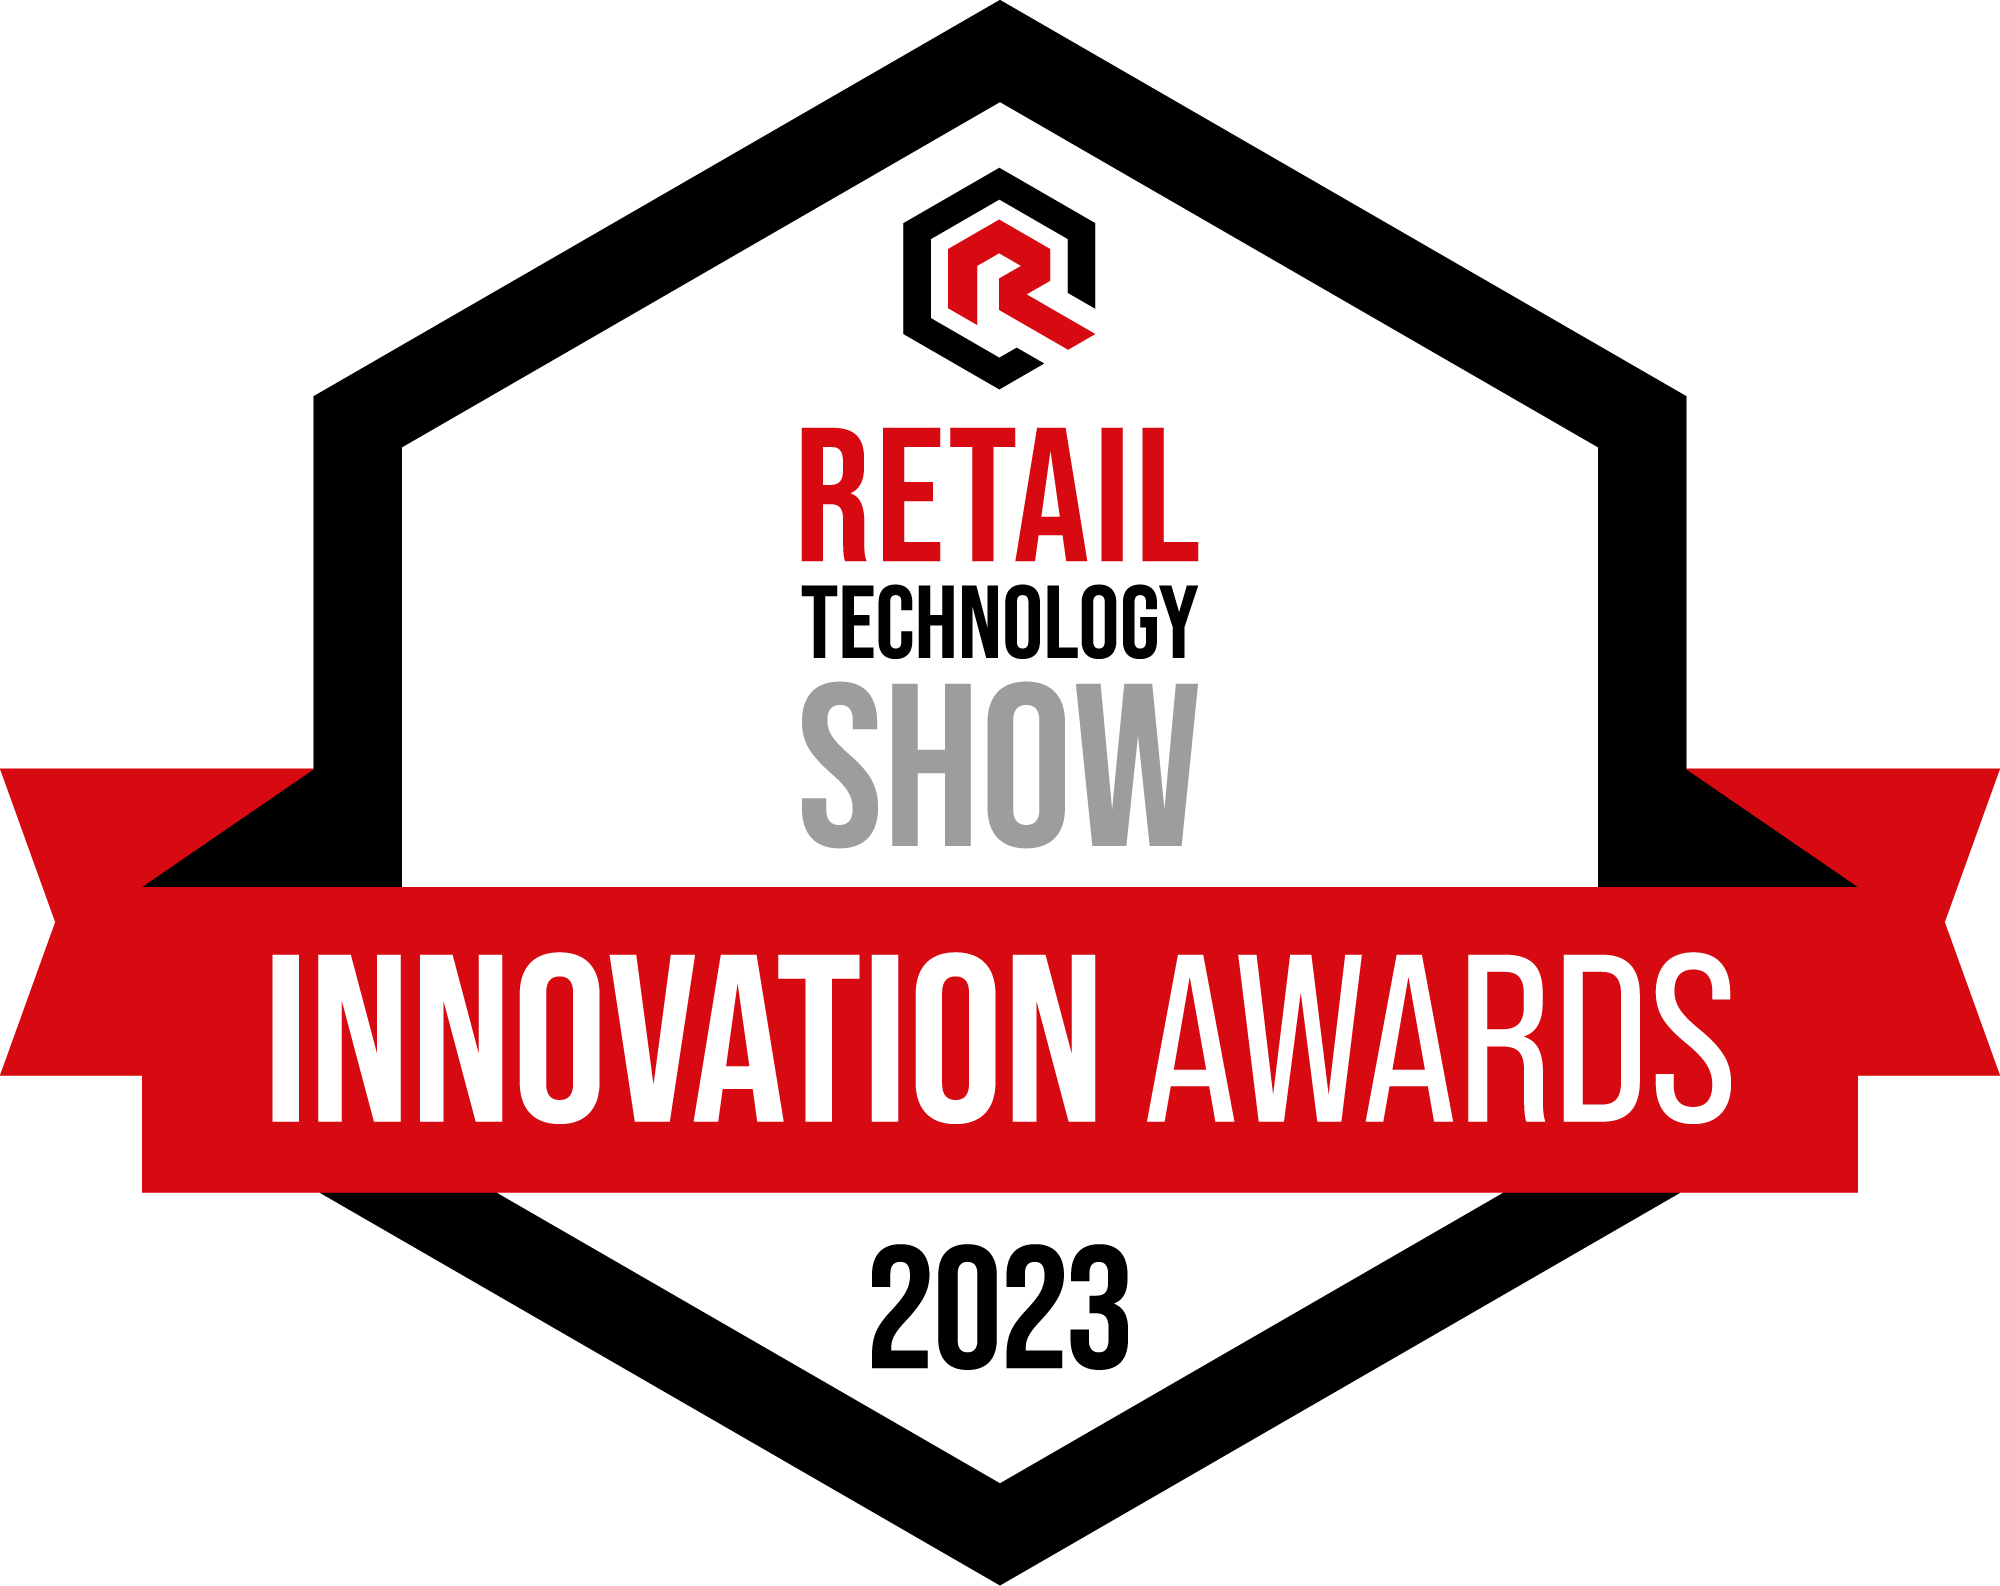 Innovation Awards 2023